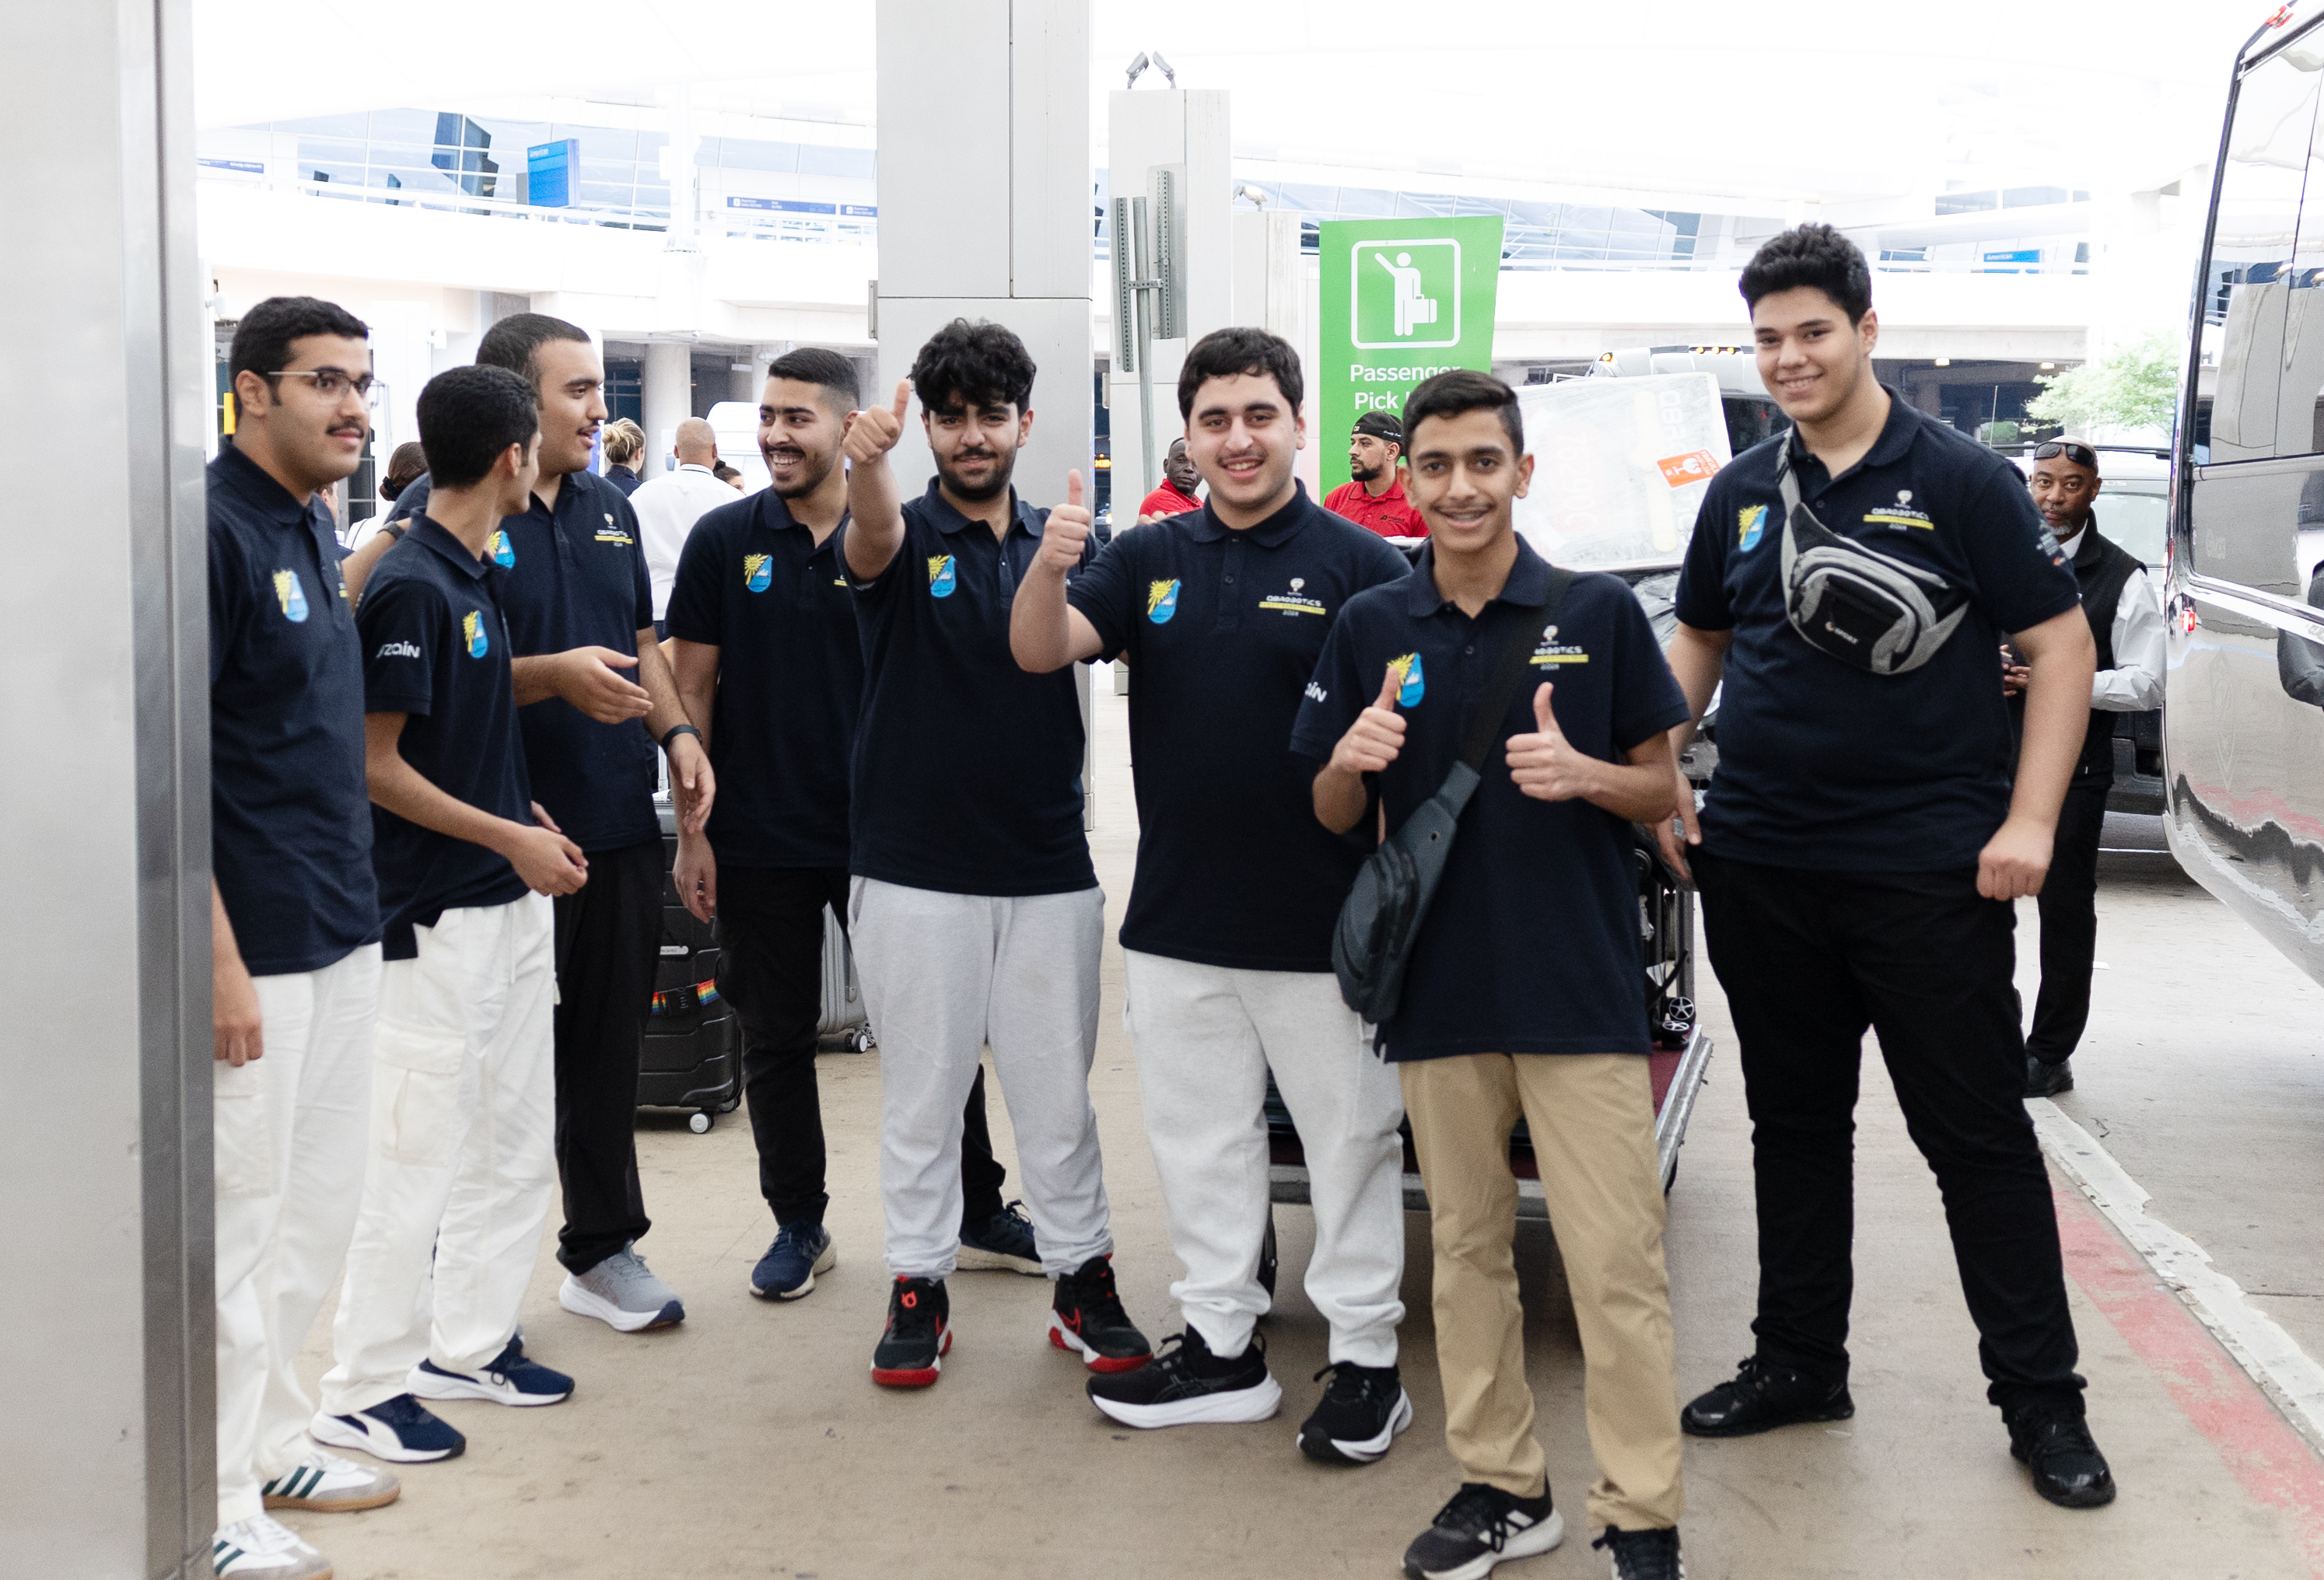 وفد الكويت الوطني للمرحلة الثانوية يصل إلى مدينة دالاس الأمريكية للمشاركة في مسابقة فيكس الدولية للروبوتات